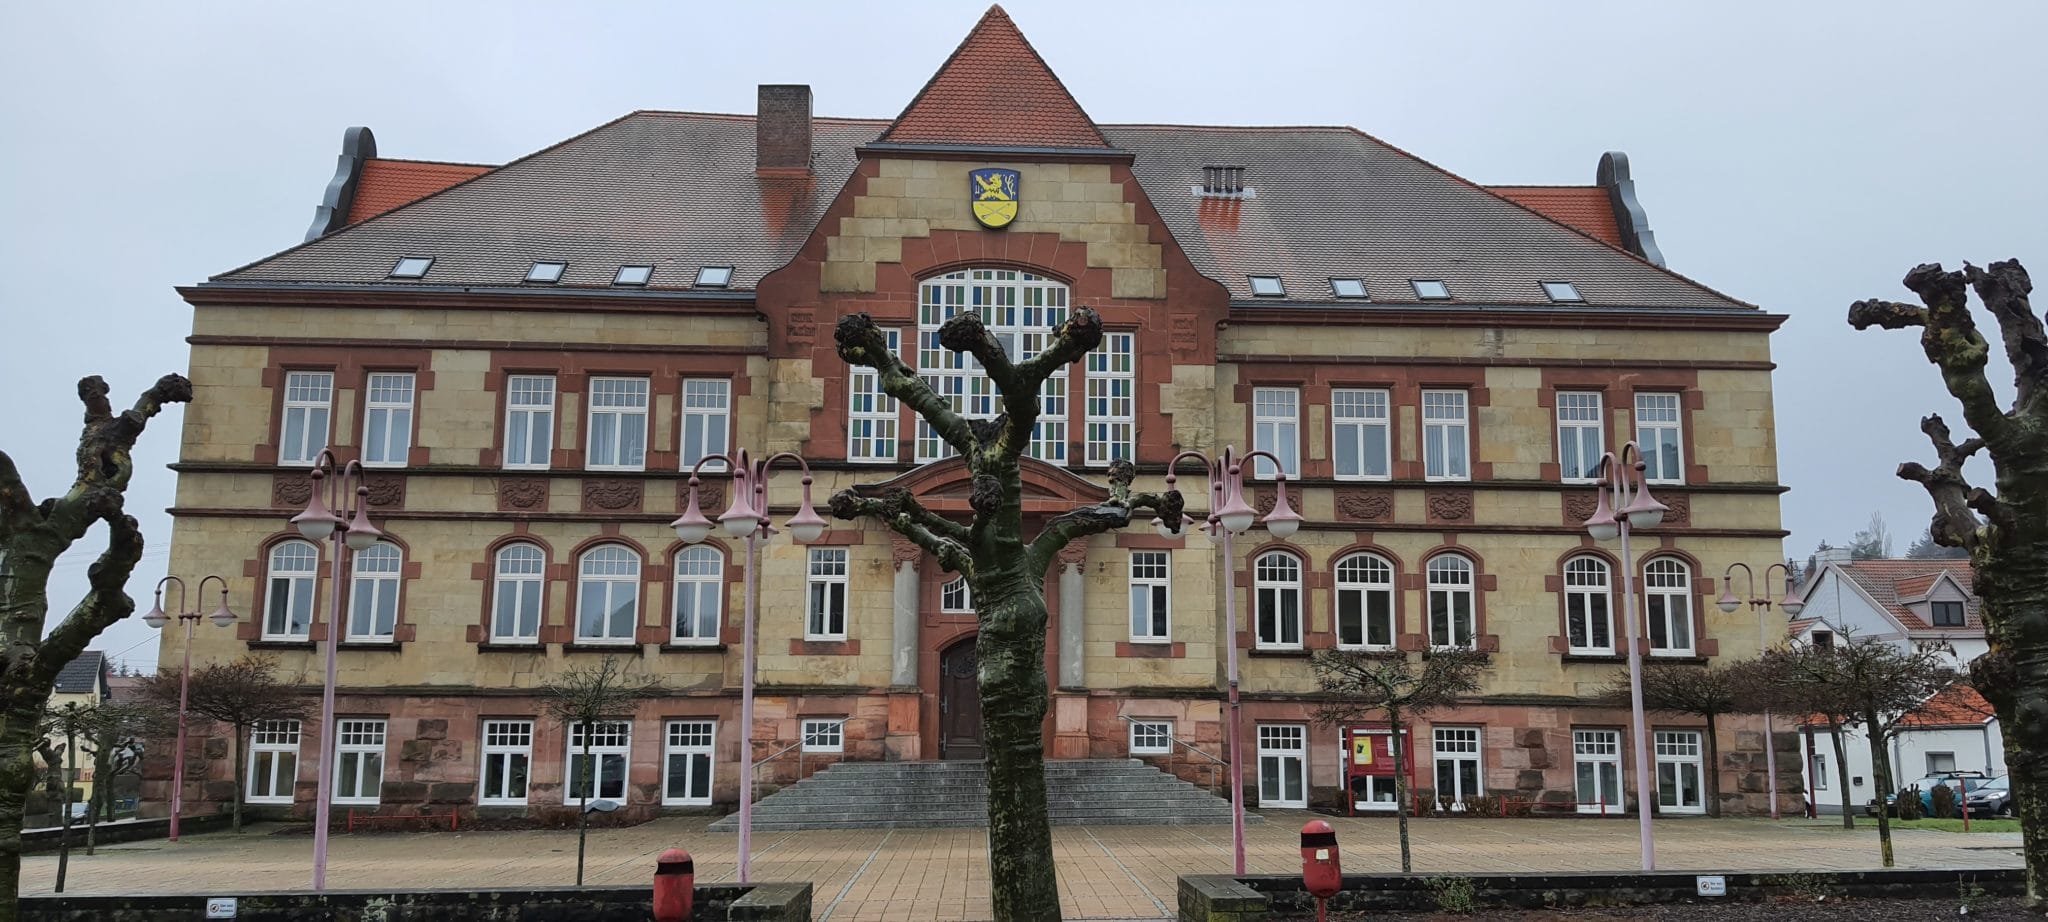 Das Wappen der Stadt am Rathaus wurde überarbeitet